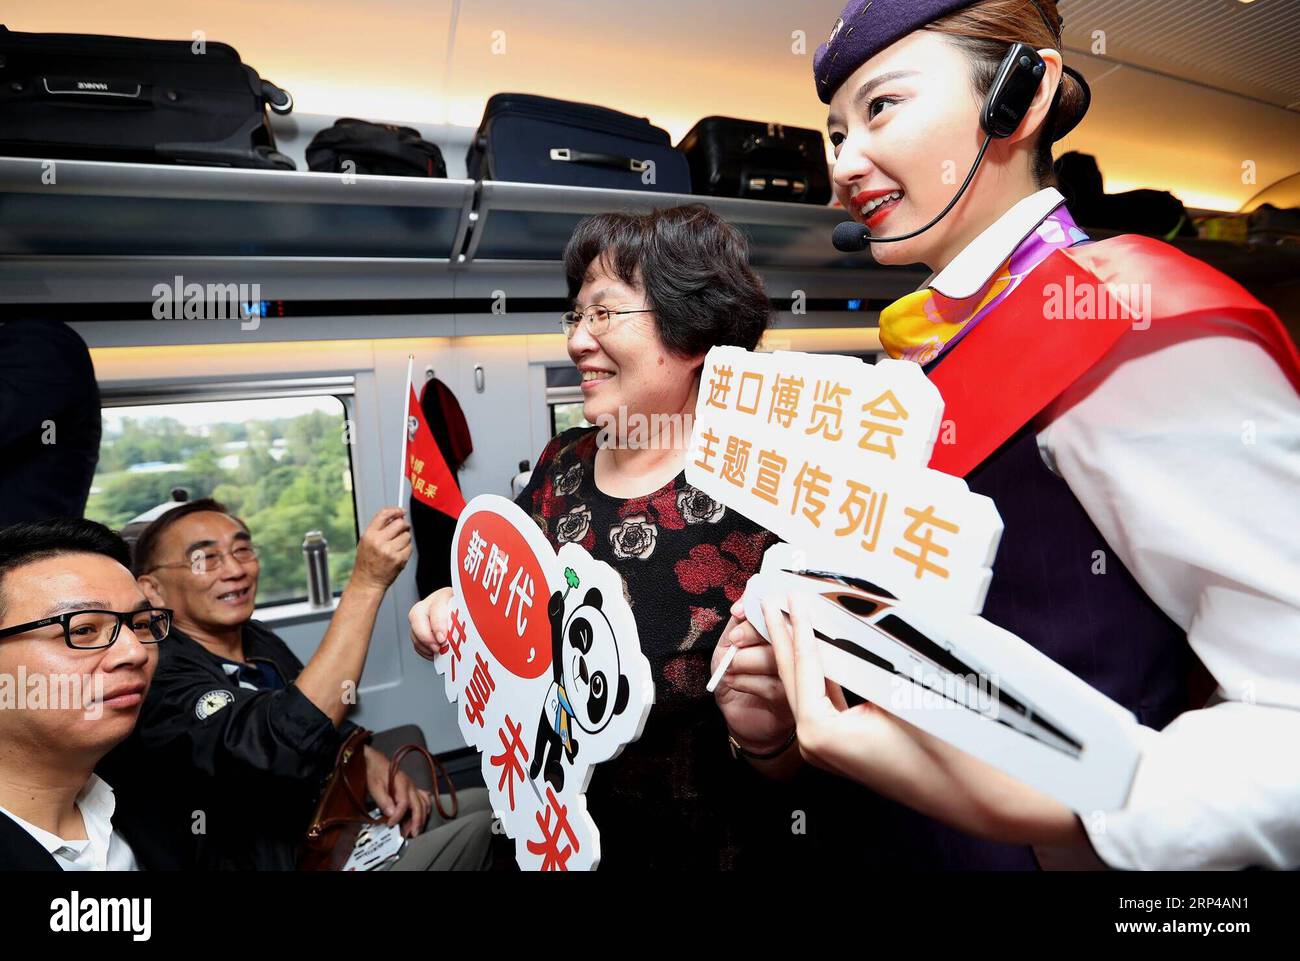 (181102) -- SHANGHAI, 2 novembre 2018 -- Une hôtesse de l'air présente des informations sur la première China International Import Expo (CIIE) aux passagers d'un train à grande vitesse Fuxing, le 10 octobre 2018. Le train à grande vitesse Fuxing circulait sur la ligne Pékin-Shanghai. La première China International Import Expo (CIIE) se tiendra du 5 au 10 novembre à Shanghai. (Wyo) CHINA-SHANGHAI-CIIE-CITY OVERVIEW (CN) ChenxFei PUBLICATIONxNOTxINxCHN Banque D'Images